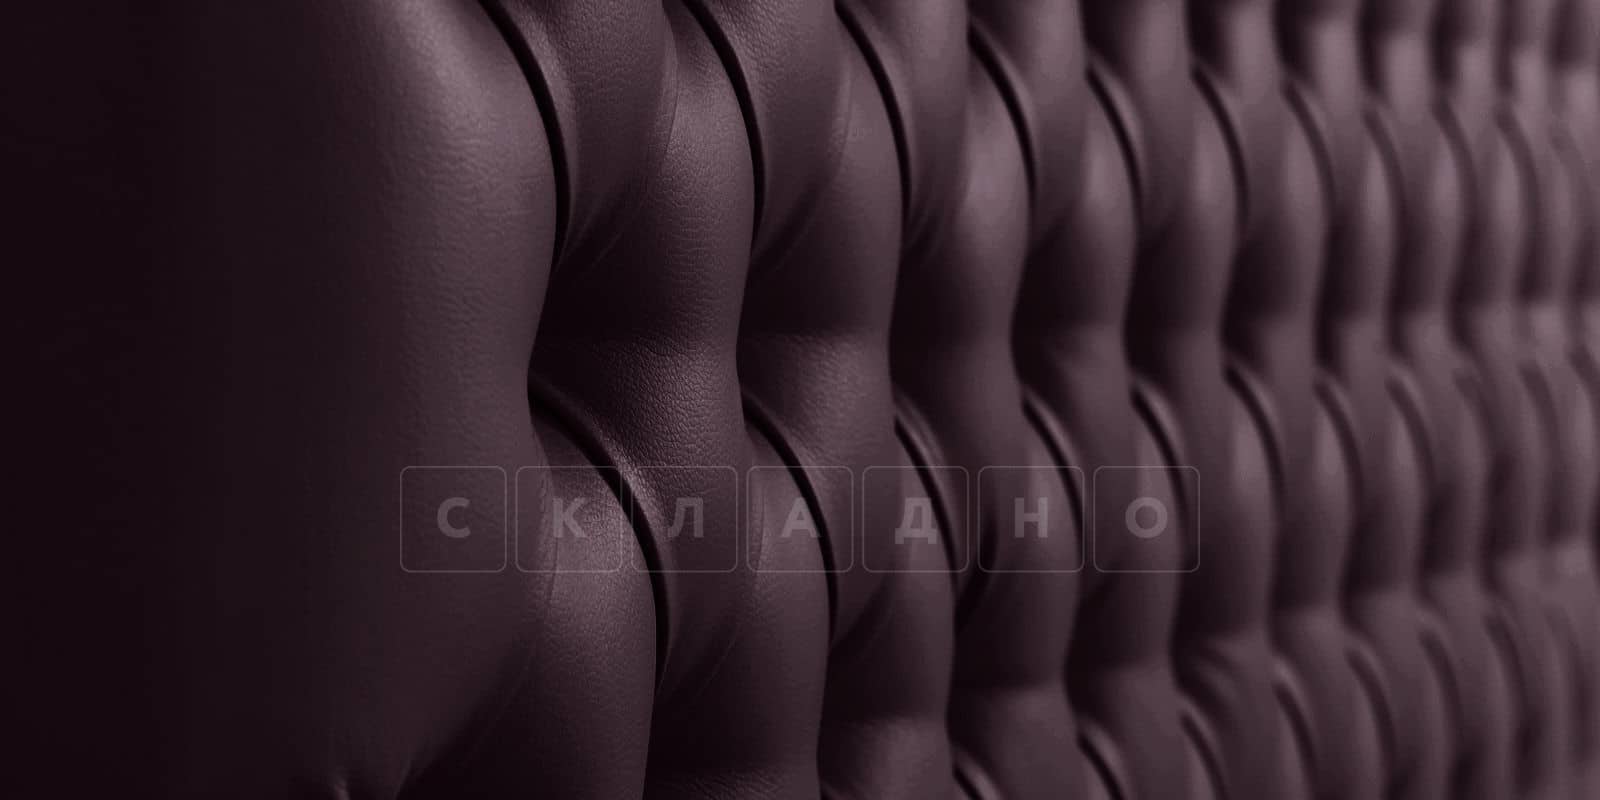 Мягкая кровать Малибу 160 см экокожа шоколадного цвета вариант 4 фото 5 | интернет-магазин Складно